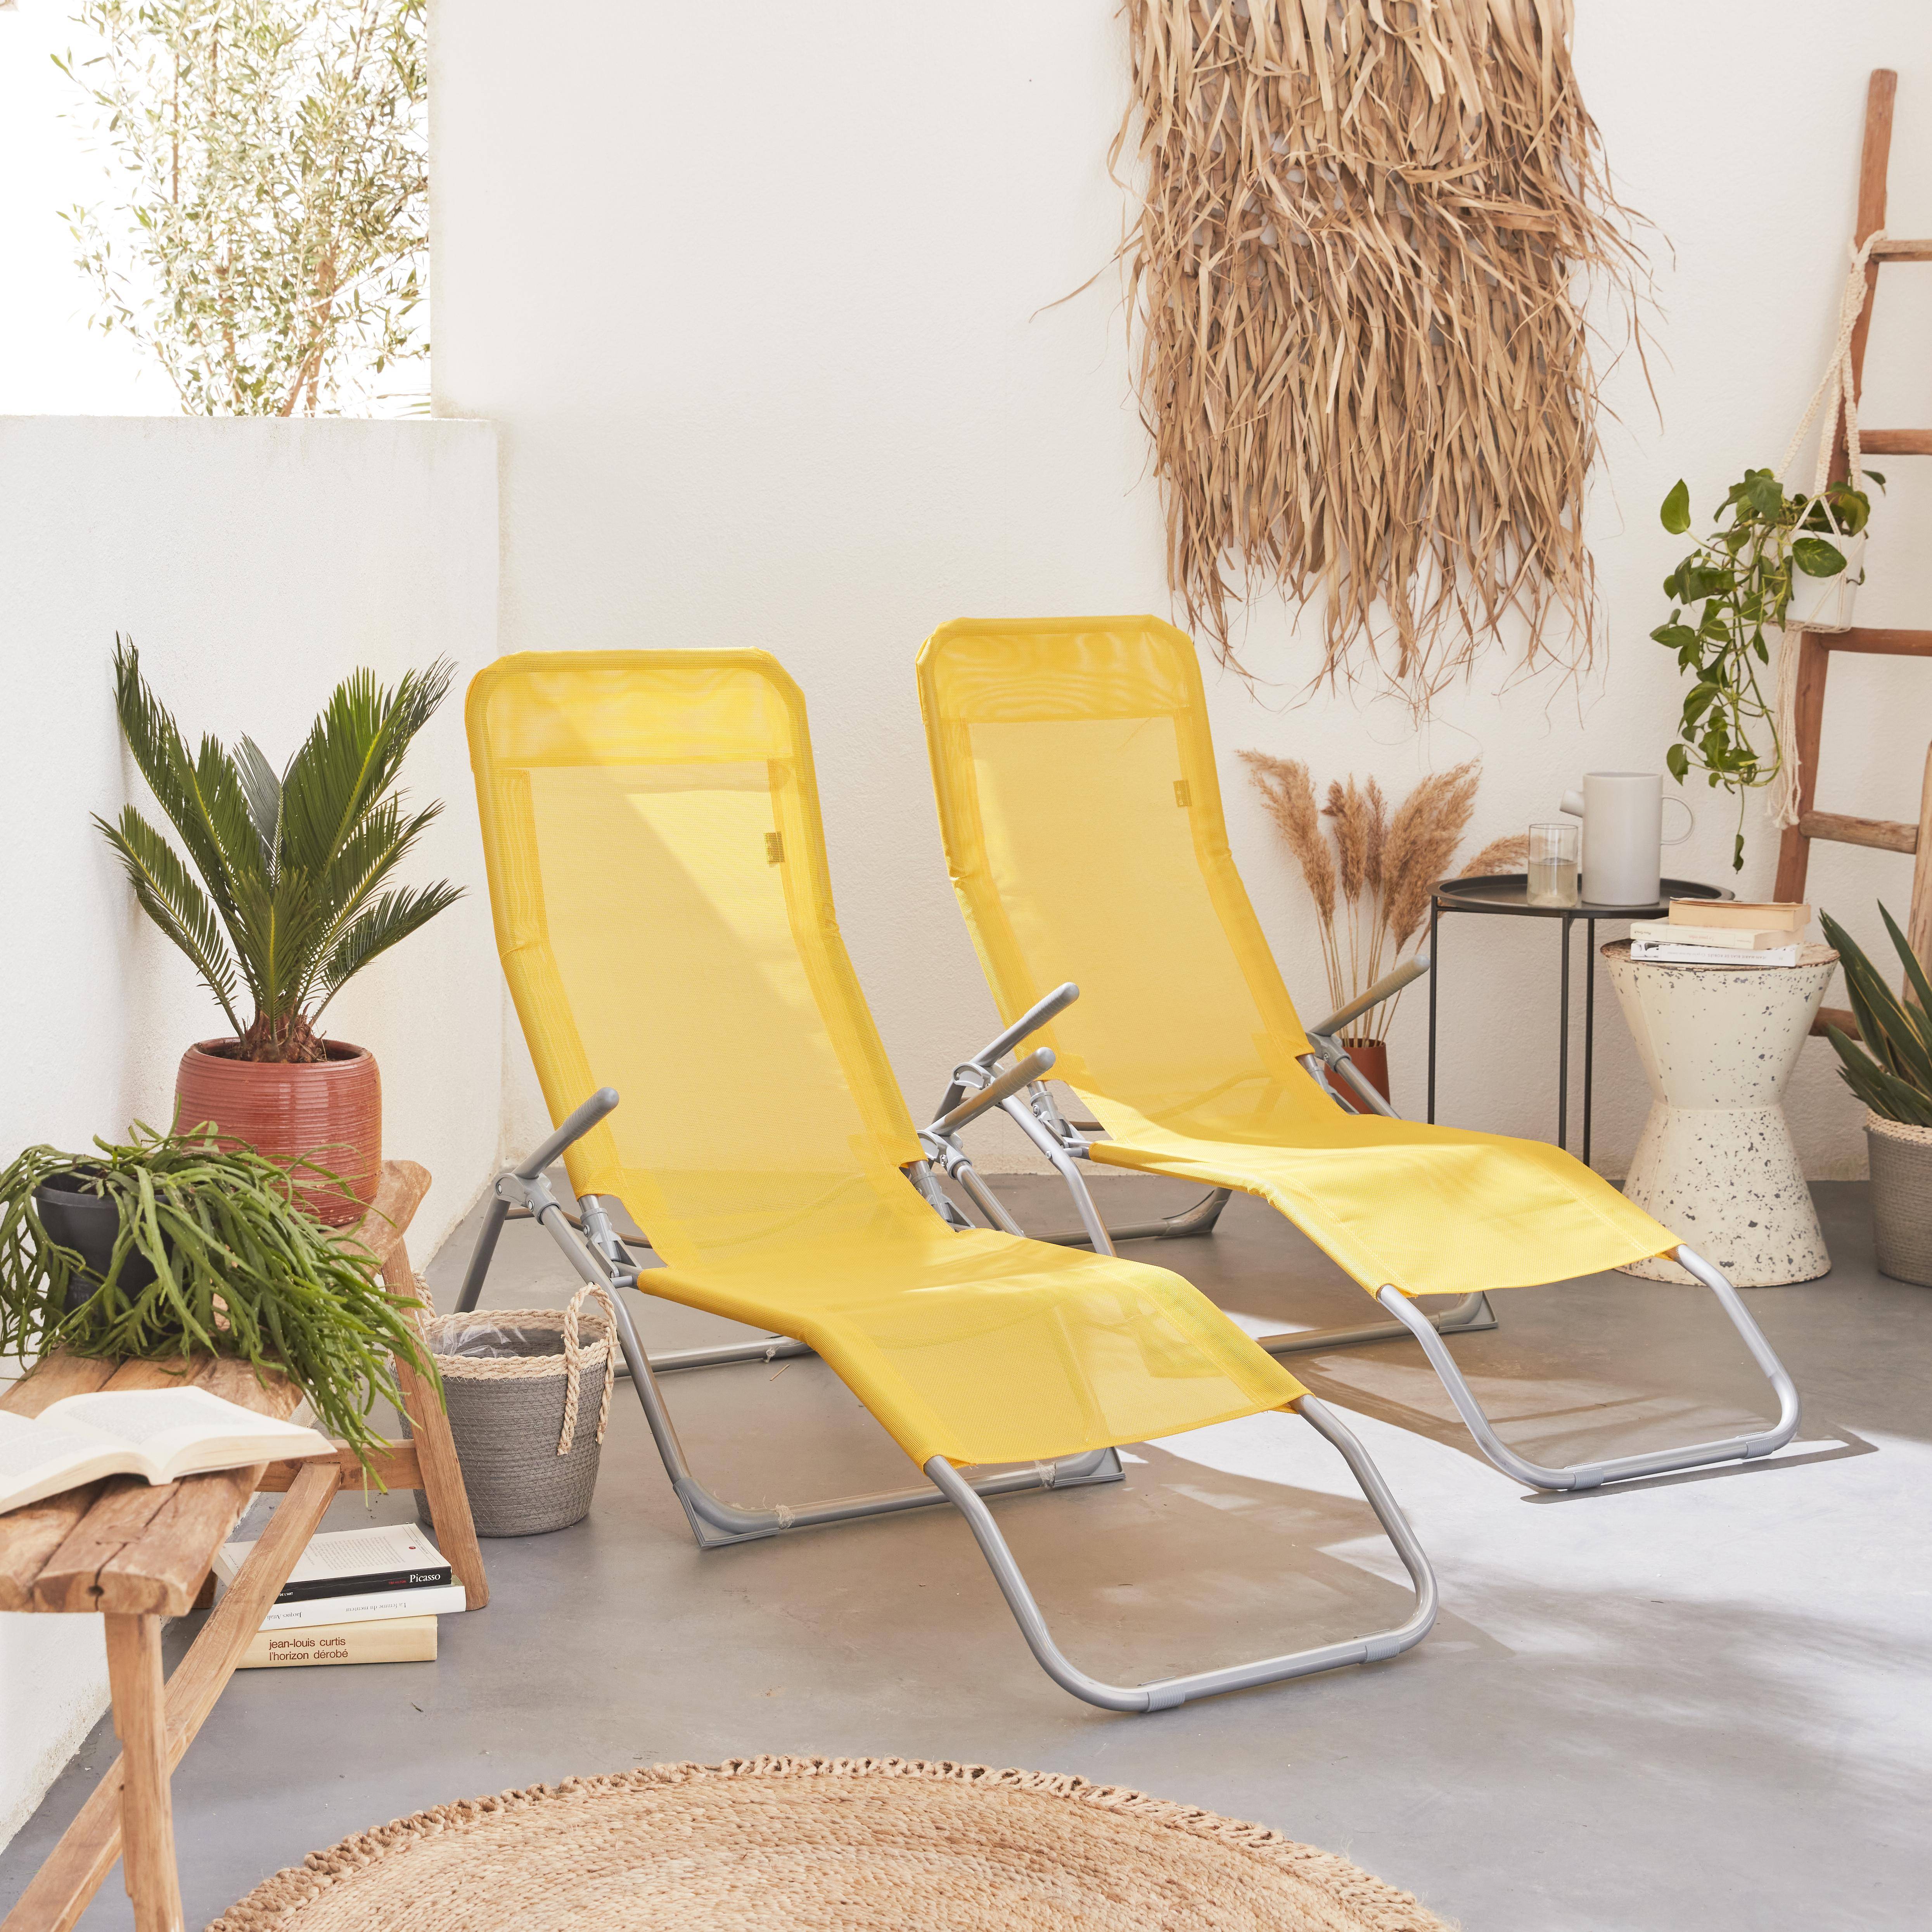 Set mit 2 klappbaren Sonnenliegen - Levito Gelb - Textilene-Liegestühle mit 2 Positionen, Liegestühle Photo1